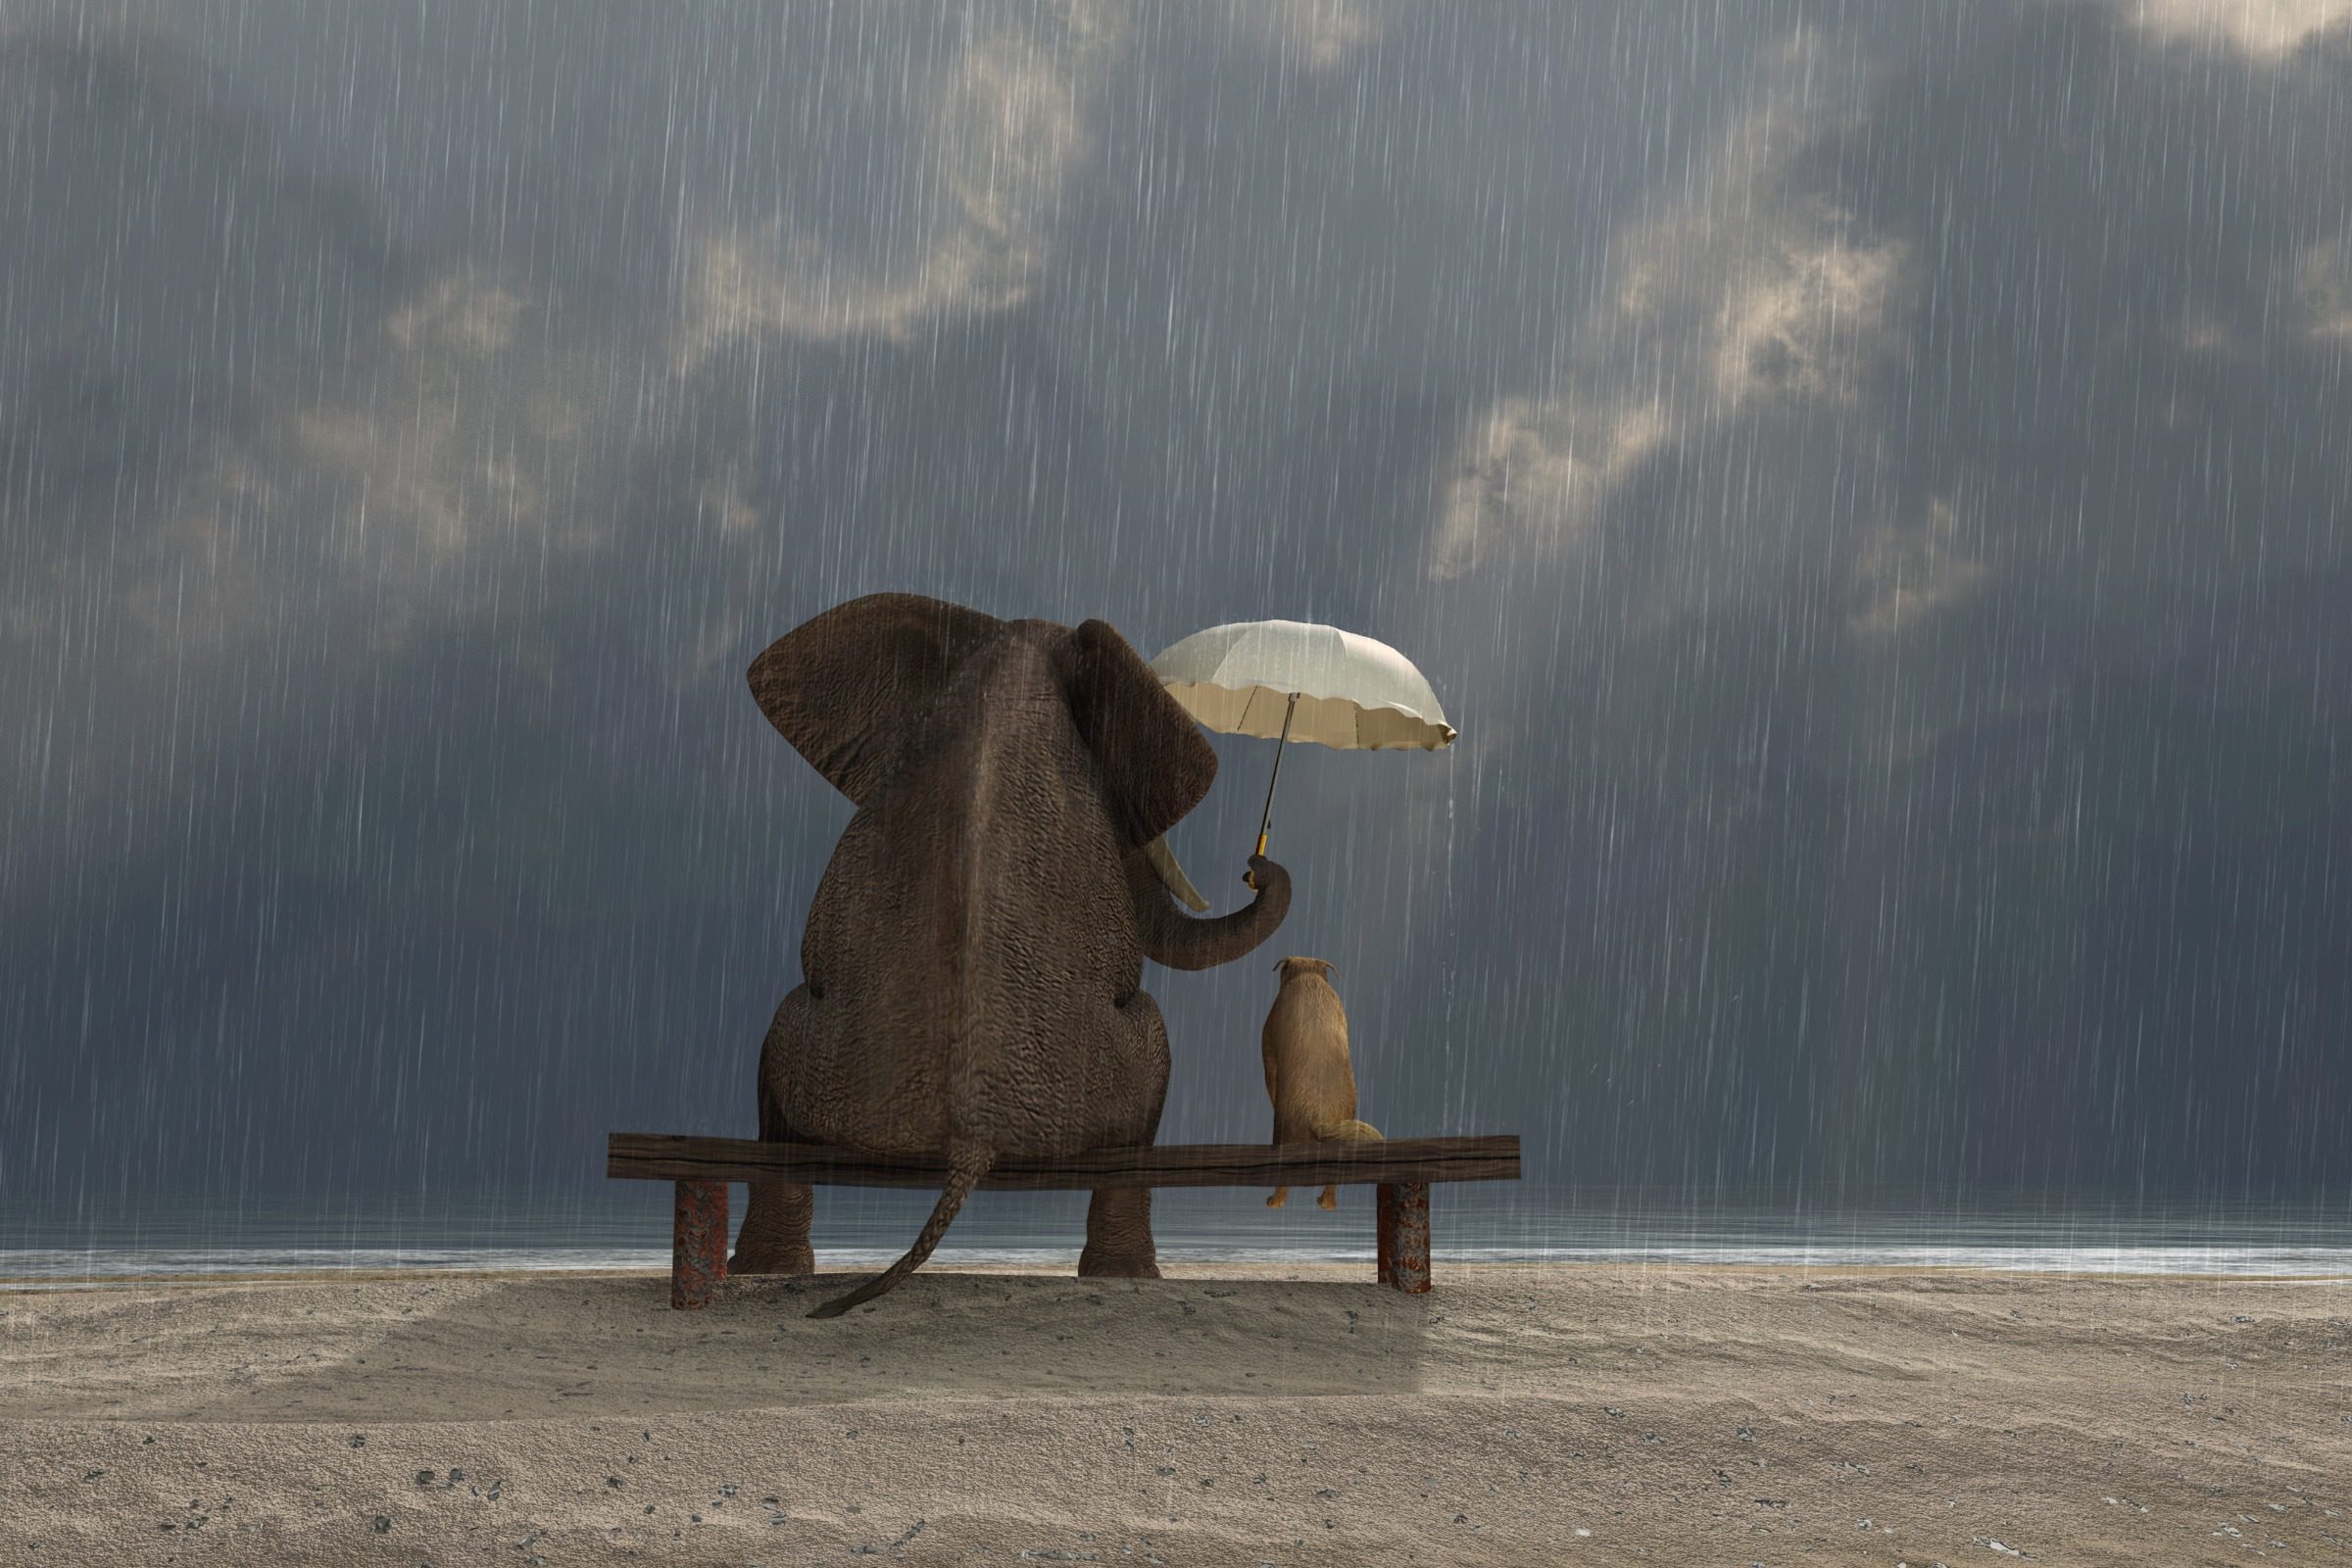 Elephant and dog sit on bench sheltering under umbrella